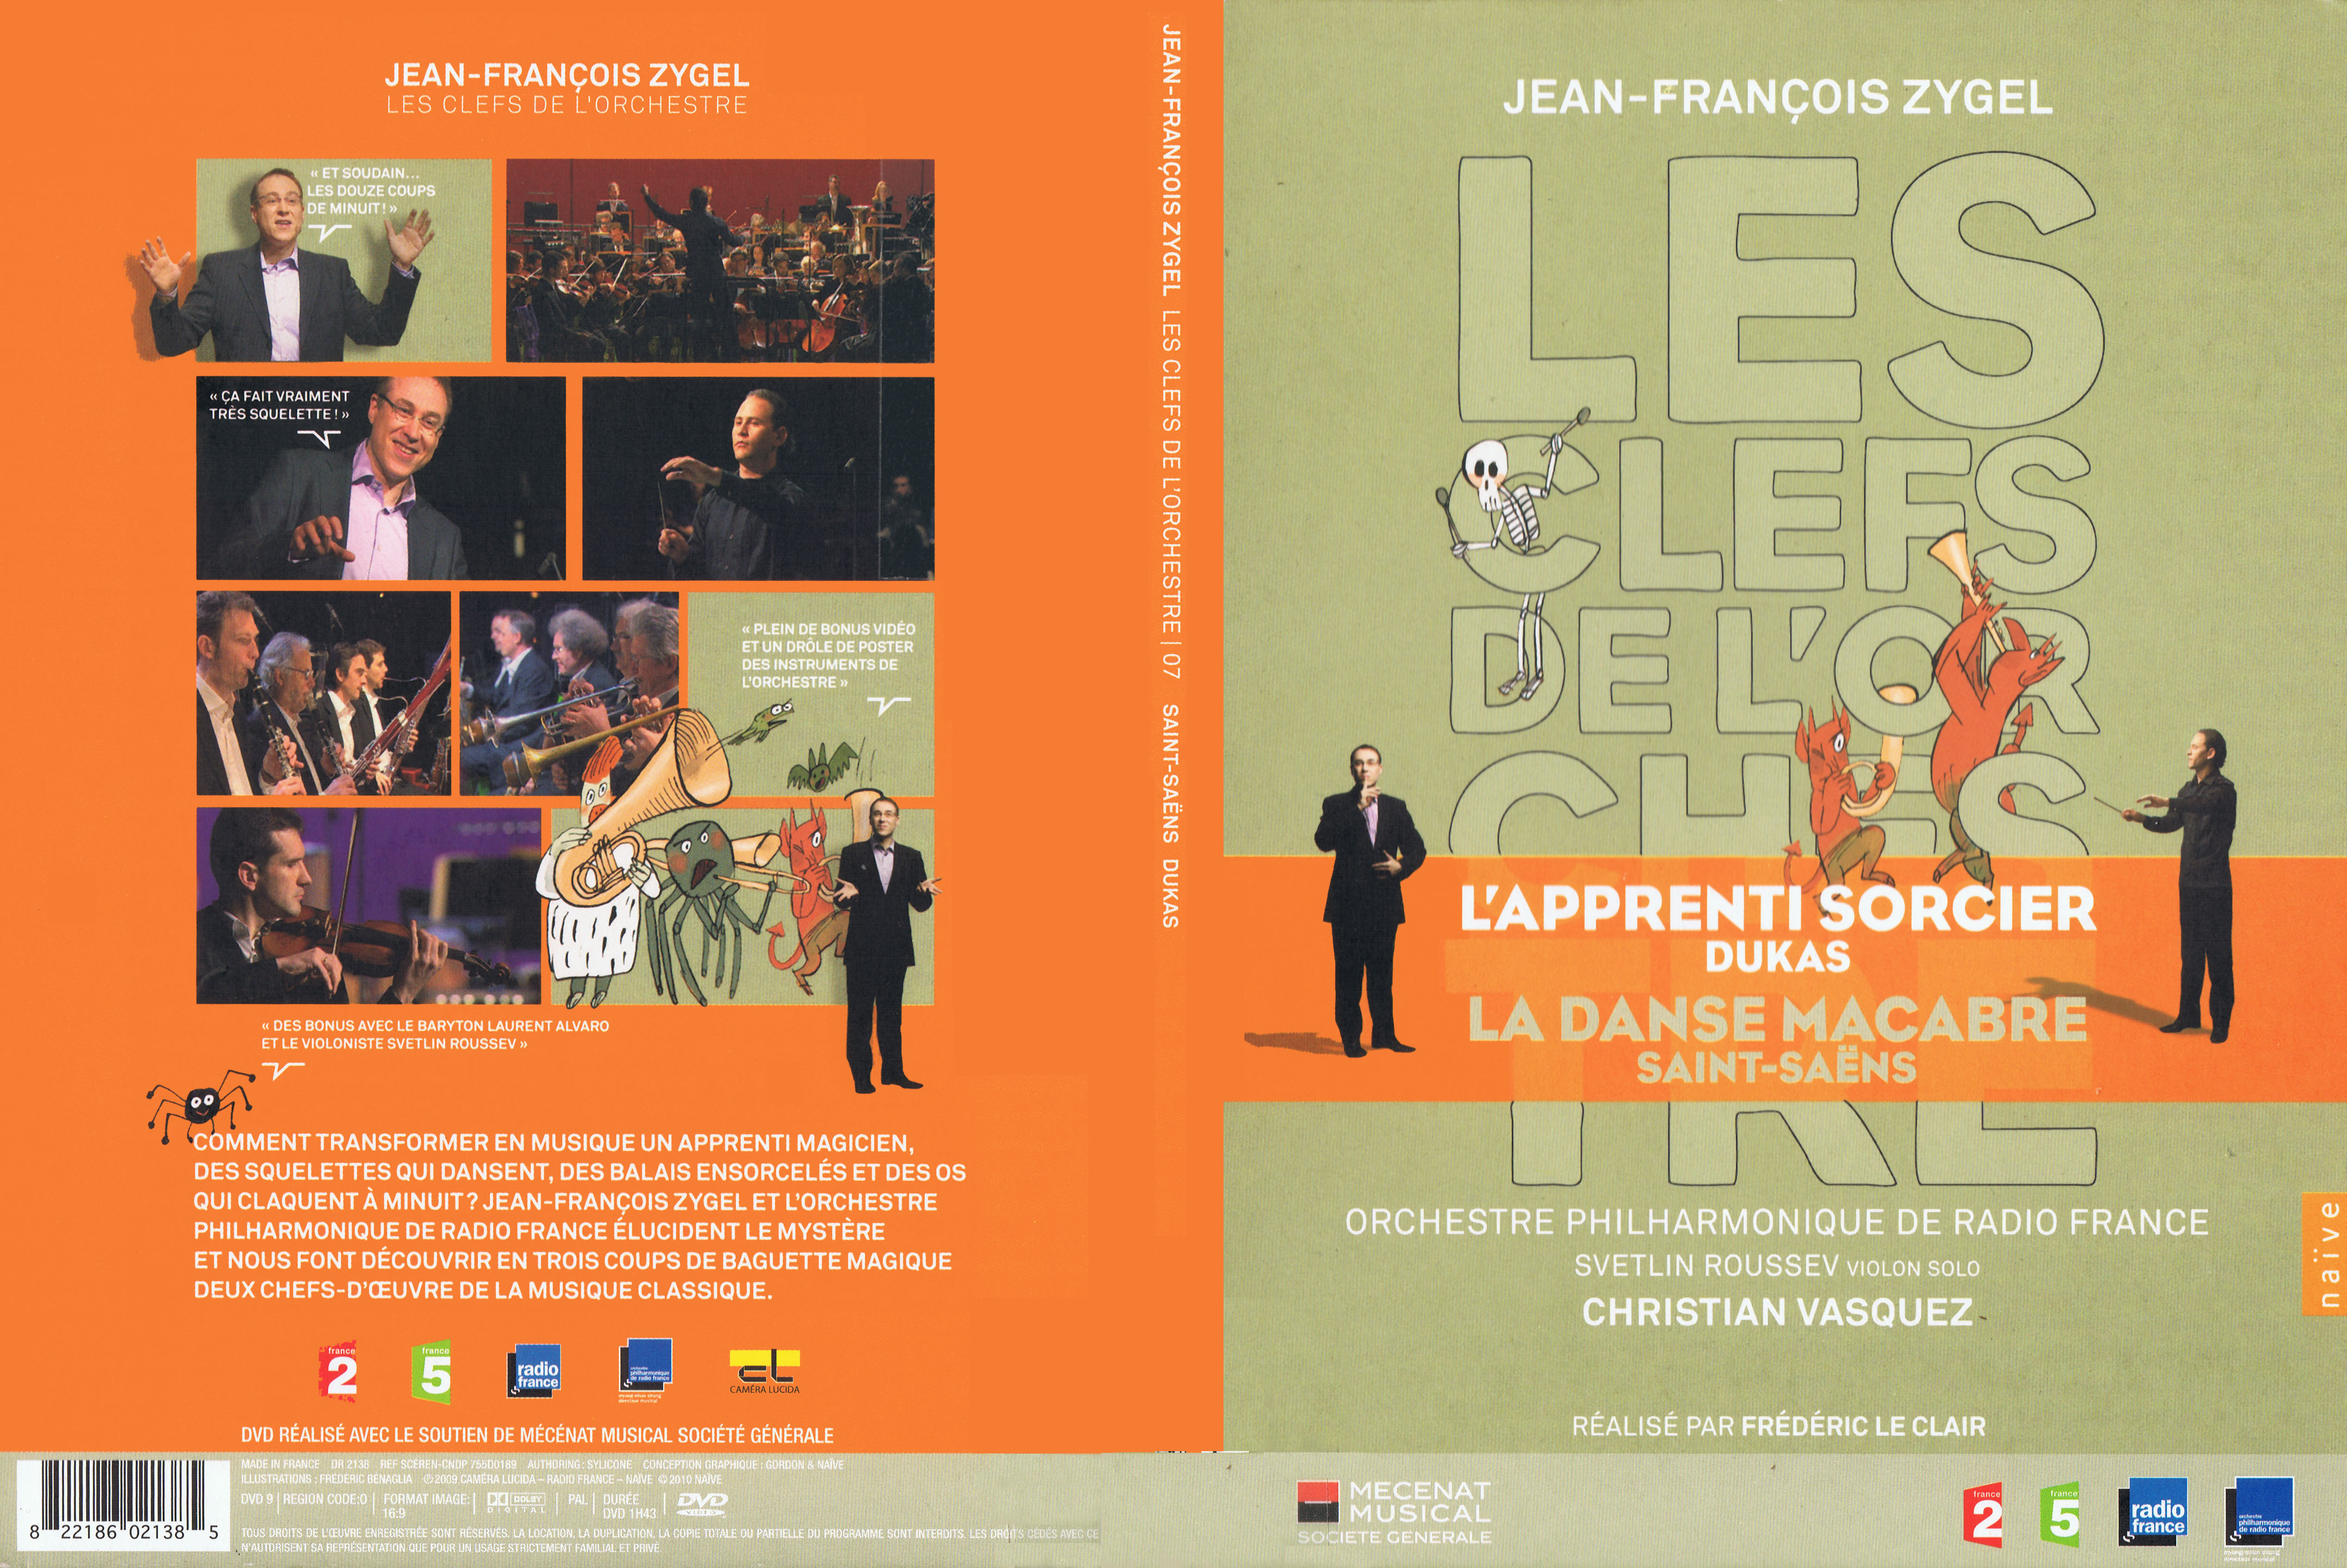 Jaquette DVD Jean Franois Zygel - Les clefs de l